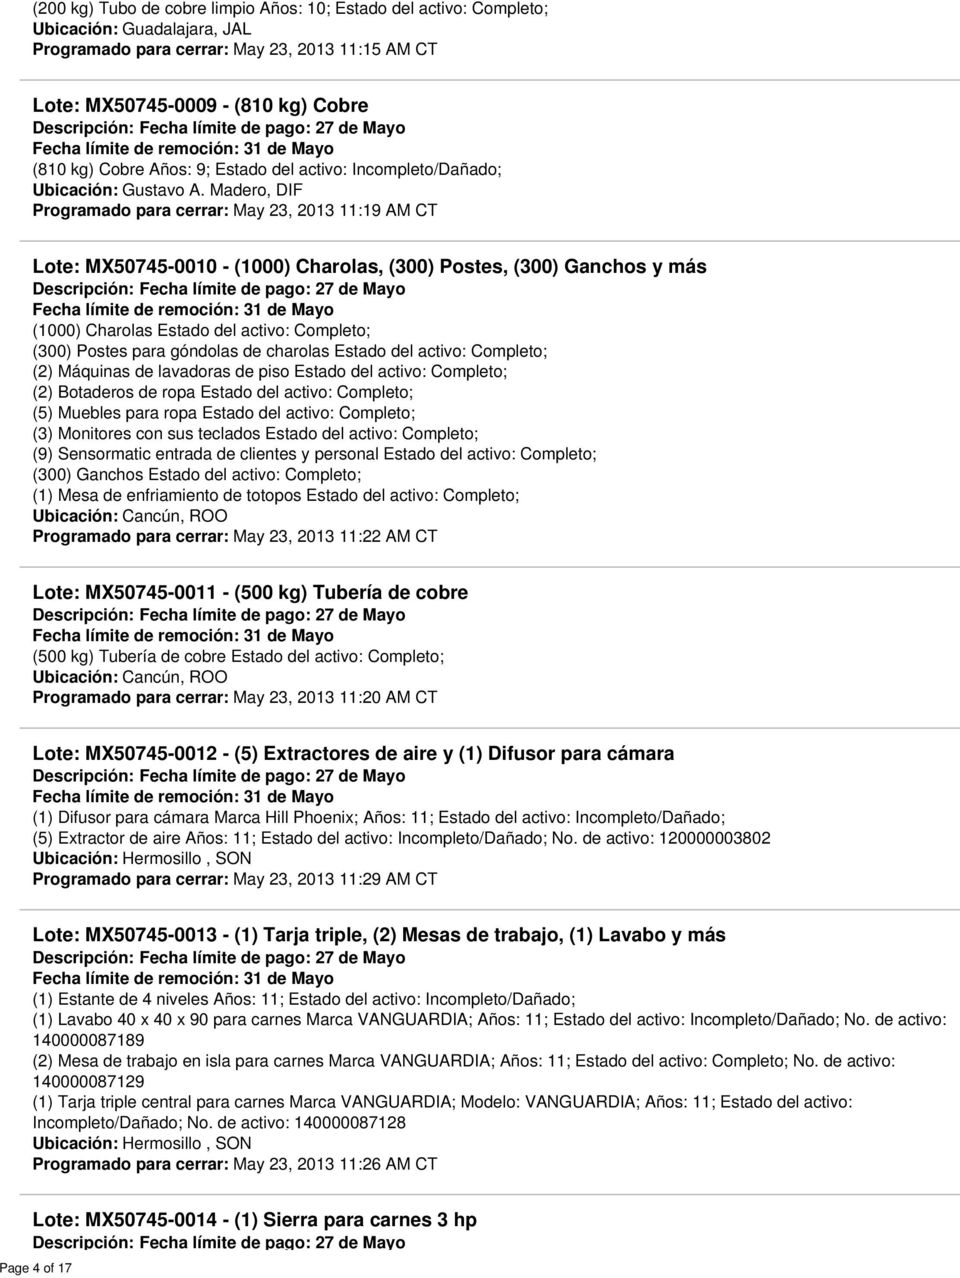 Madero, DIF Programado para cerrar: May 23, 2013 11:19 AM CT Lote: MX50745-0010 - (1000) Charolas, (300) Postes, (300) Ganchos y más (1000) Charolas Estado del activo: Completo; (300) Postes para